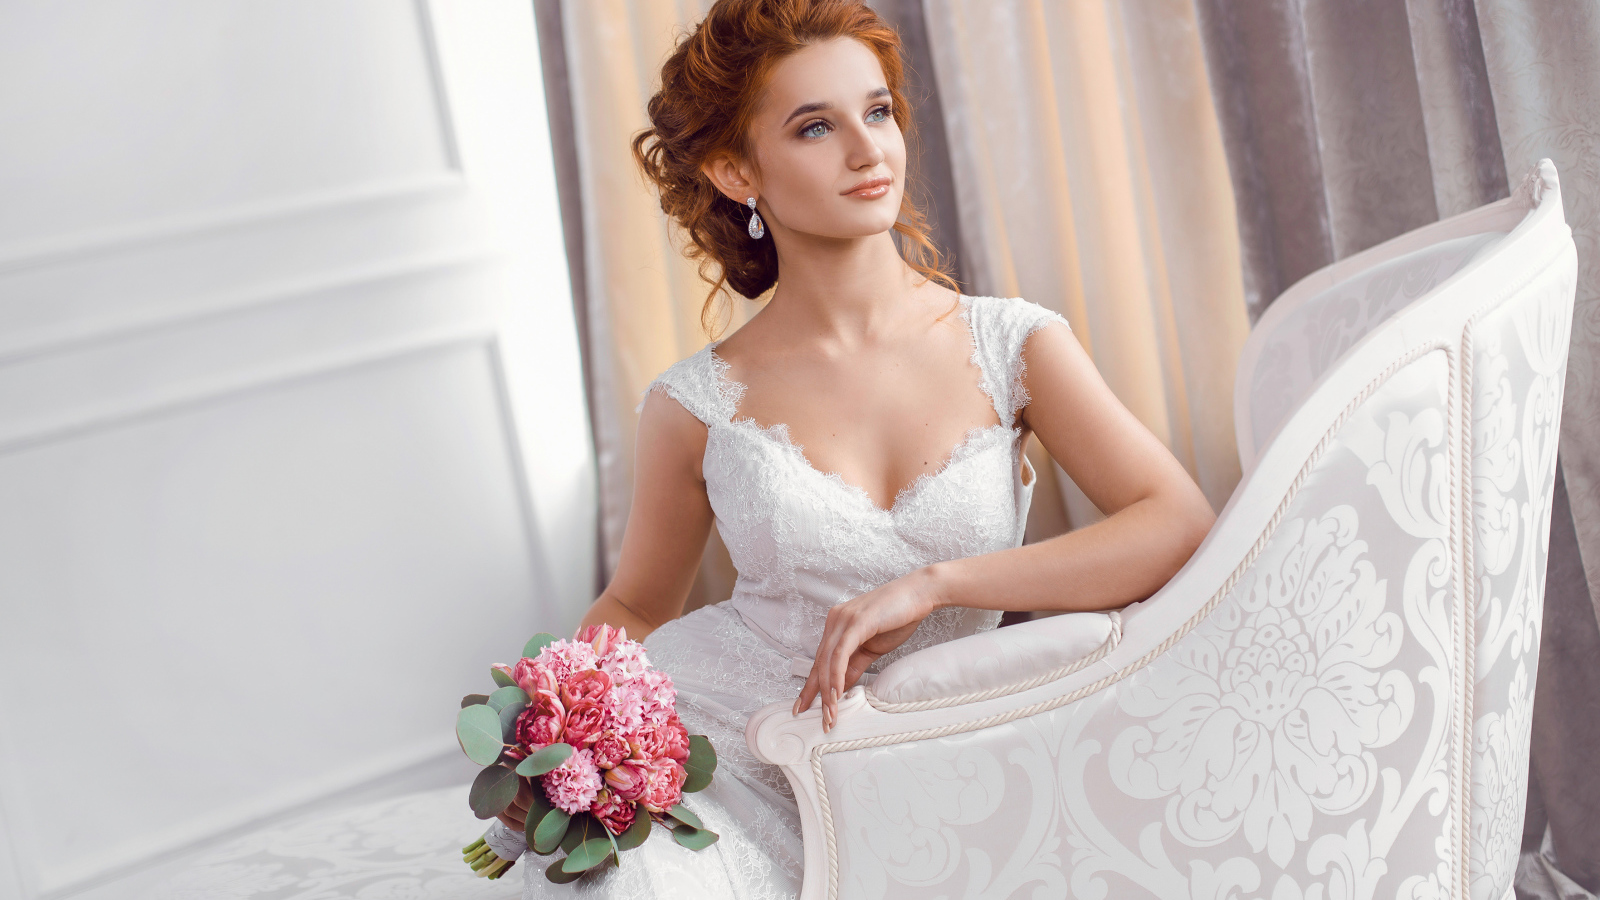 Красивая рыжеволосая девушка невеста в красивом свадебном платье